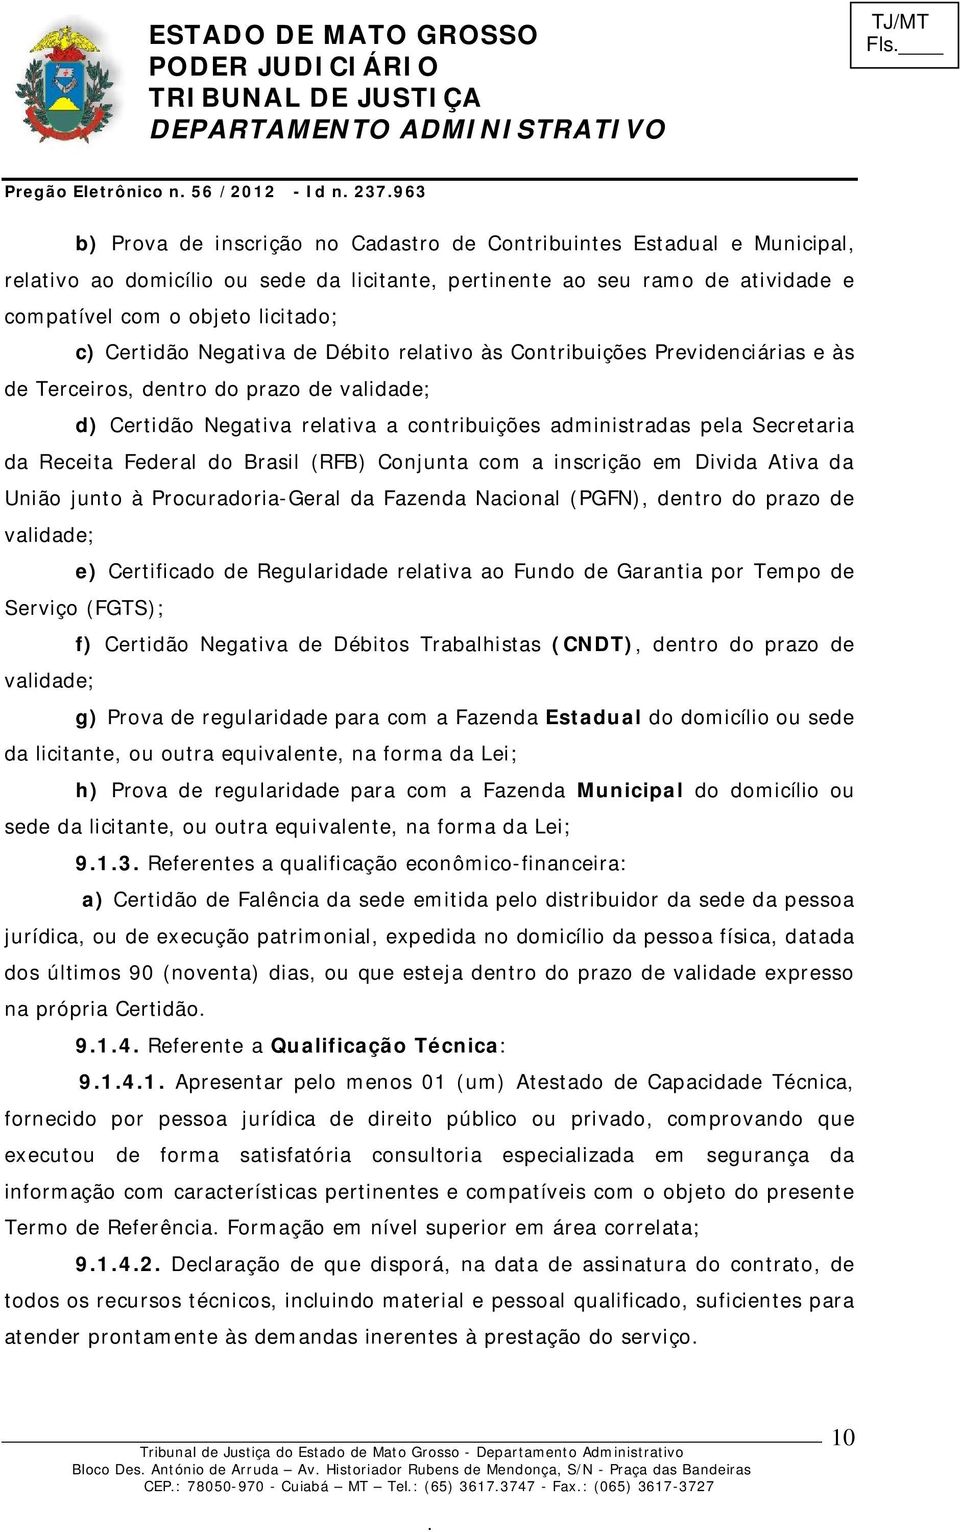 contribuições administradas pela Secretaria da Receita Federal do Brasil (RFB) Conjunta com a inscrição em Divida Ativa da União junto à Procuradoria-Geral da Fazenda Nacional (PGFN), dentro do prazo